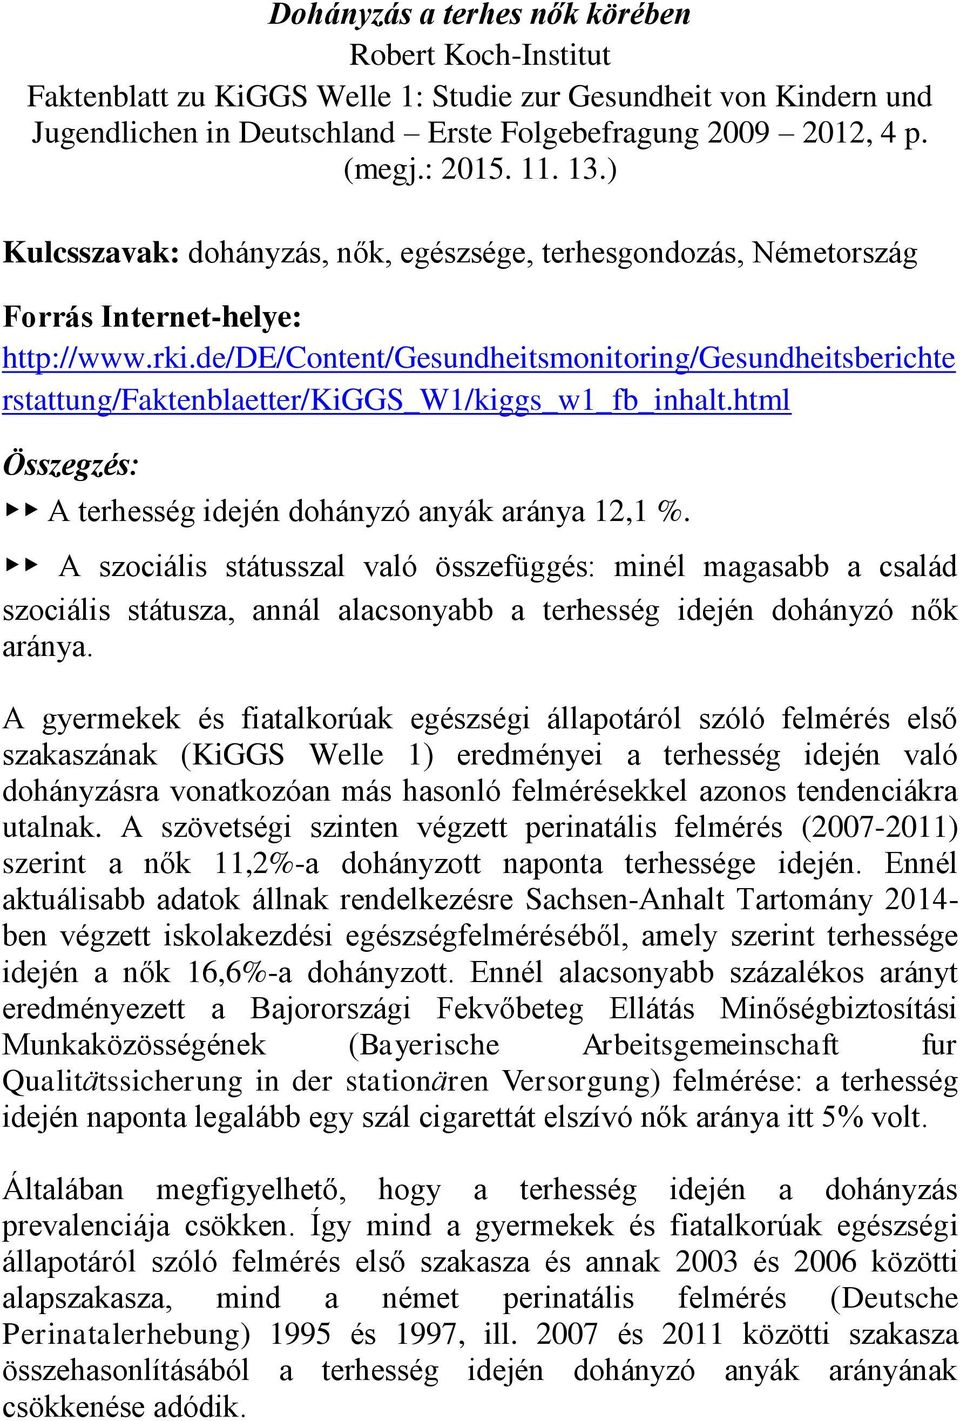 de/de/content/gesundheitsmonitoring/gesundheitsberichte rstattung/faktenblaetter/kiggs_w1/kiggs_w1_fb_inhalt.html Összegzés: A terhesség idején dohányzó anyák aránya 12,1 %.